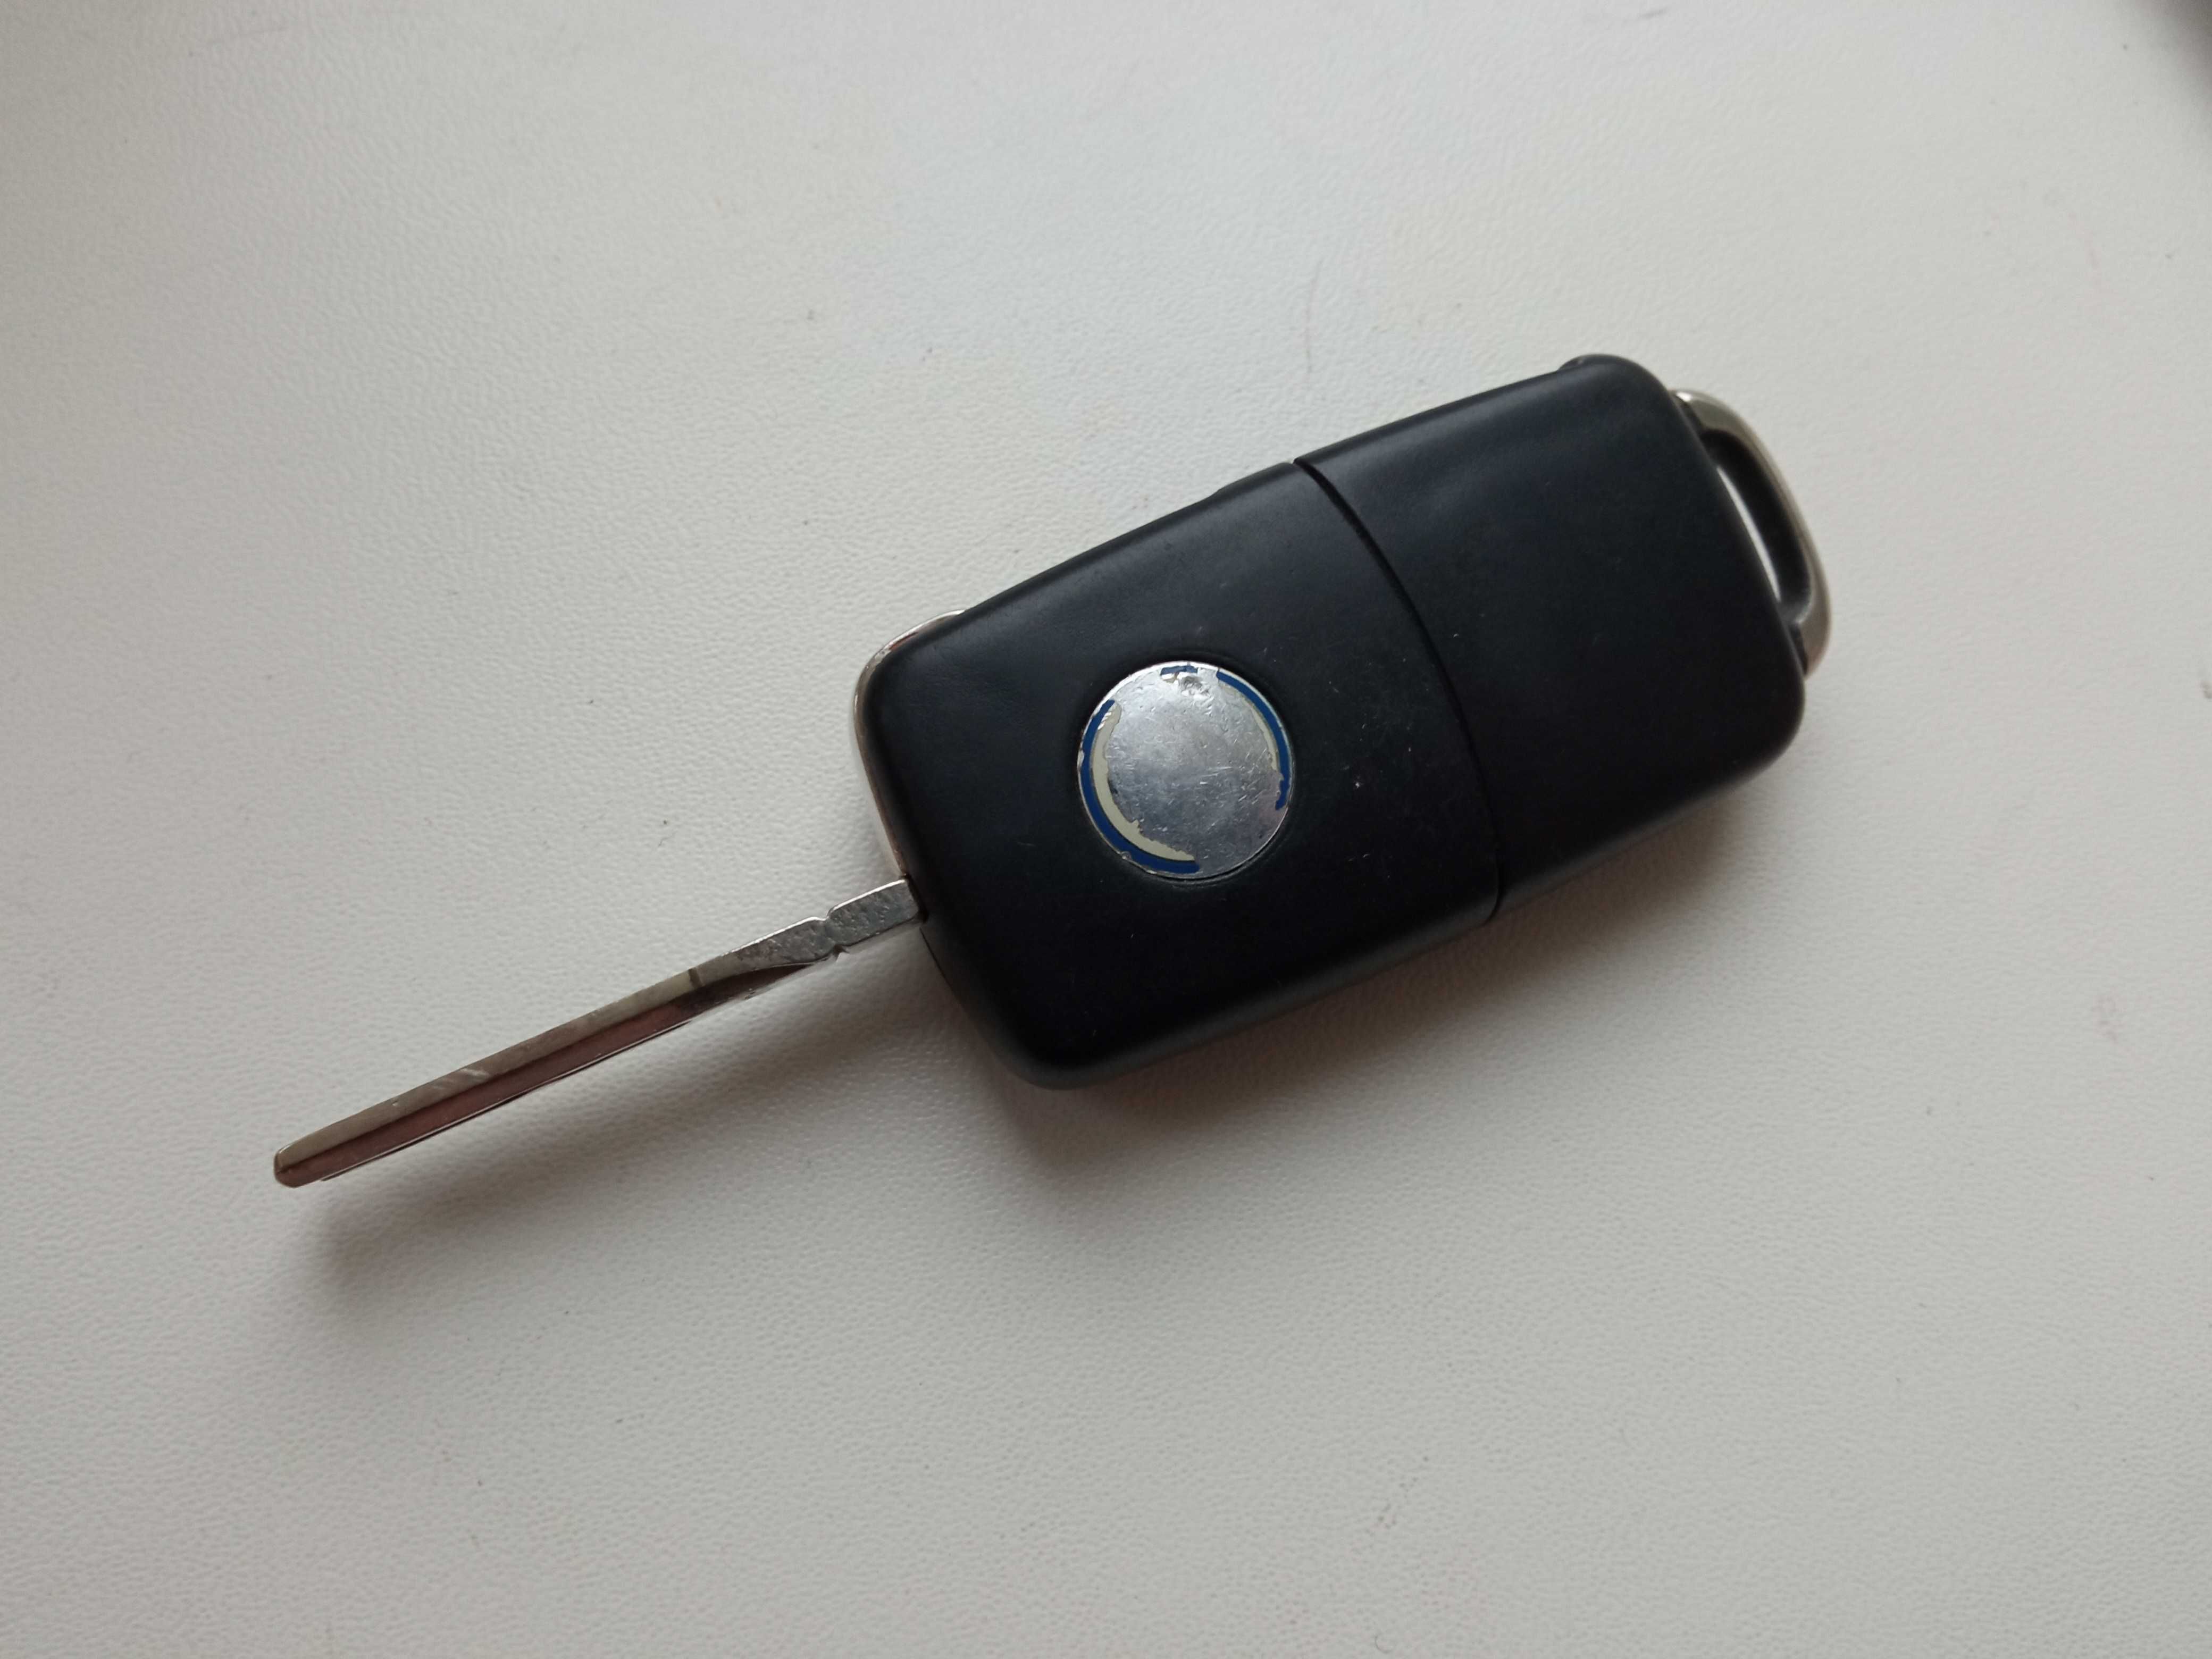 Оригинальный оригинал заводской родной ключ VW на три кнопки 434 mHz